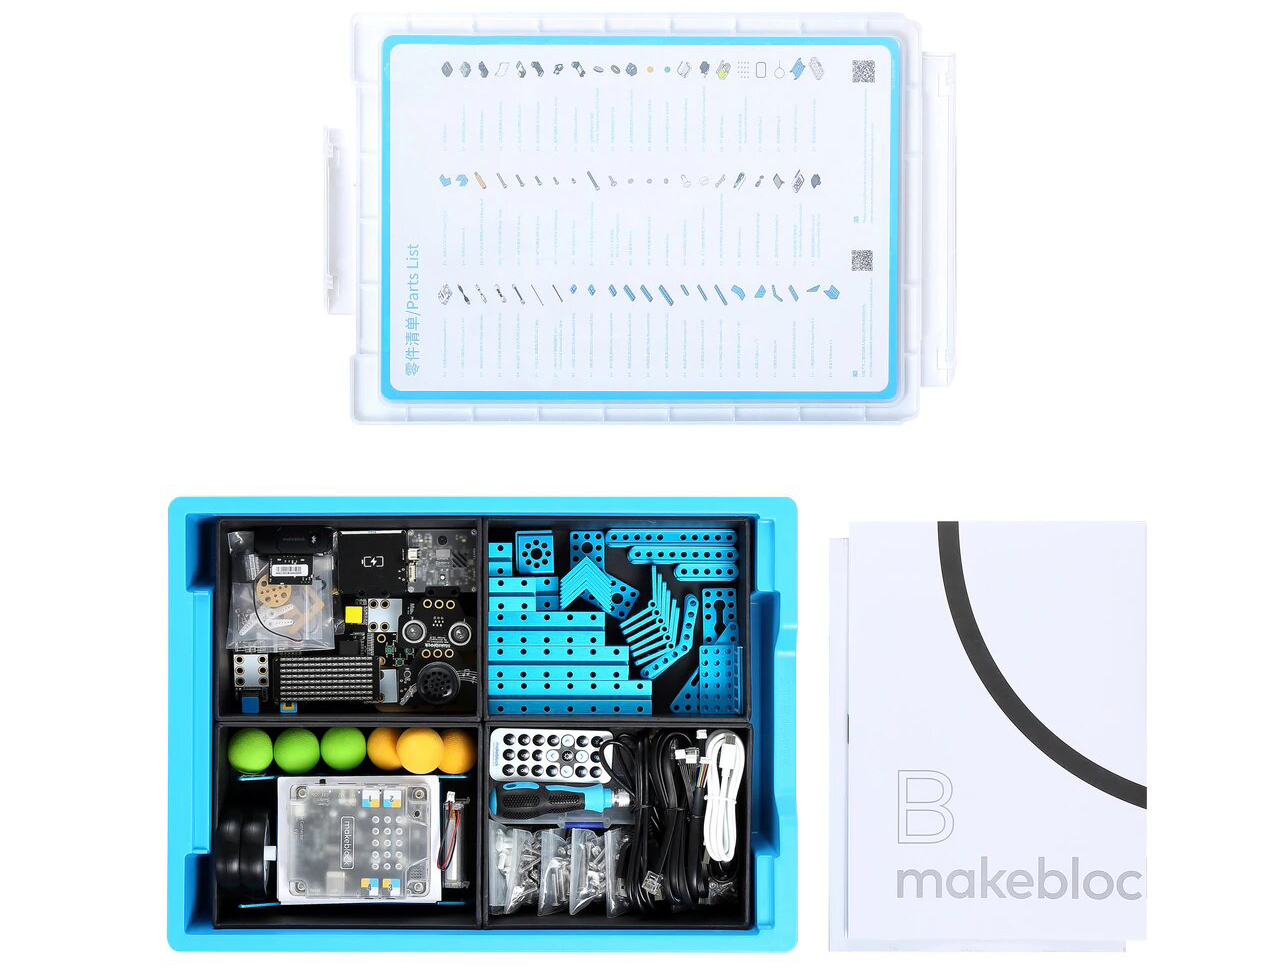 Kit de Educación Robótica AI & IoT de Makeblock - Haga Clic para Ampliar